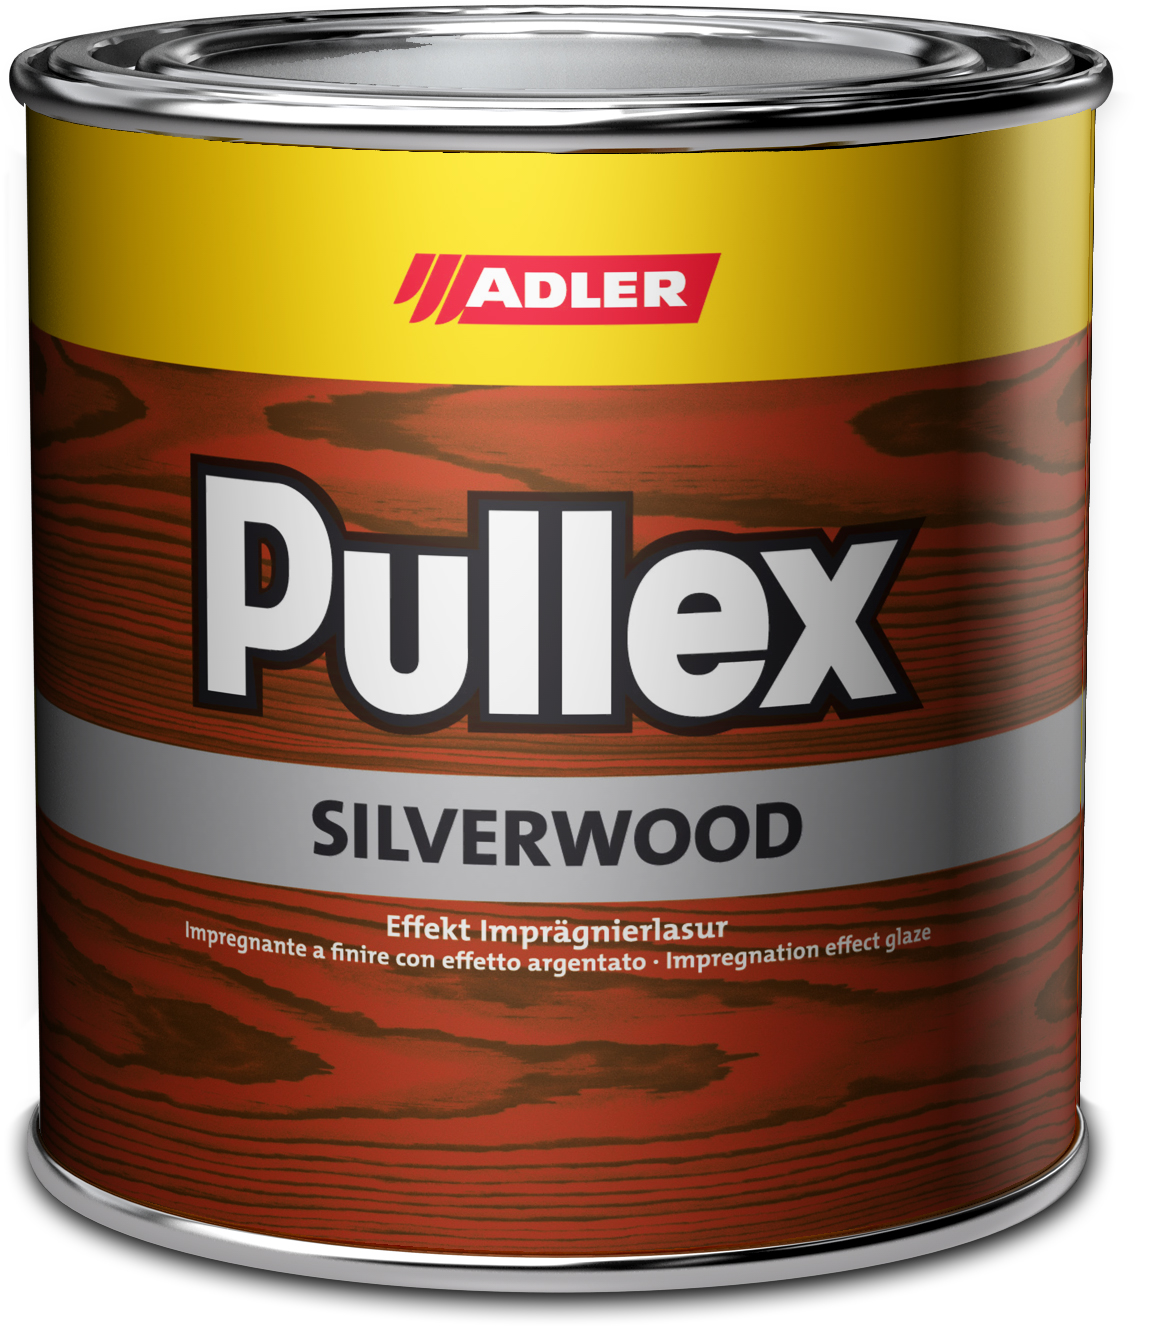 Adler Pullex Silverwood - efektná lazúra do exteriéru vytvárajúca vzhľad starého dreva 5 l farblos - bezfarebný